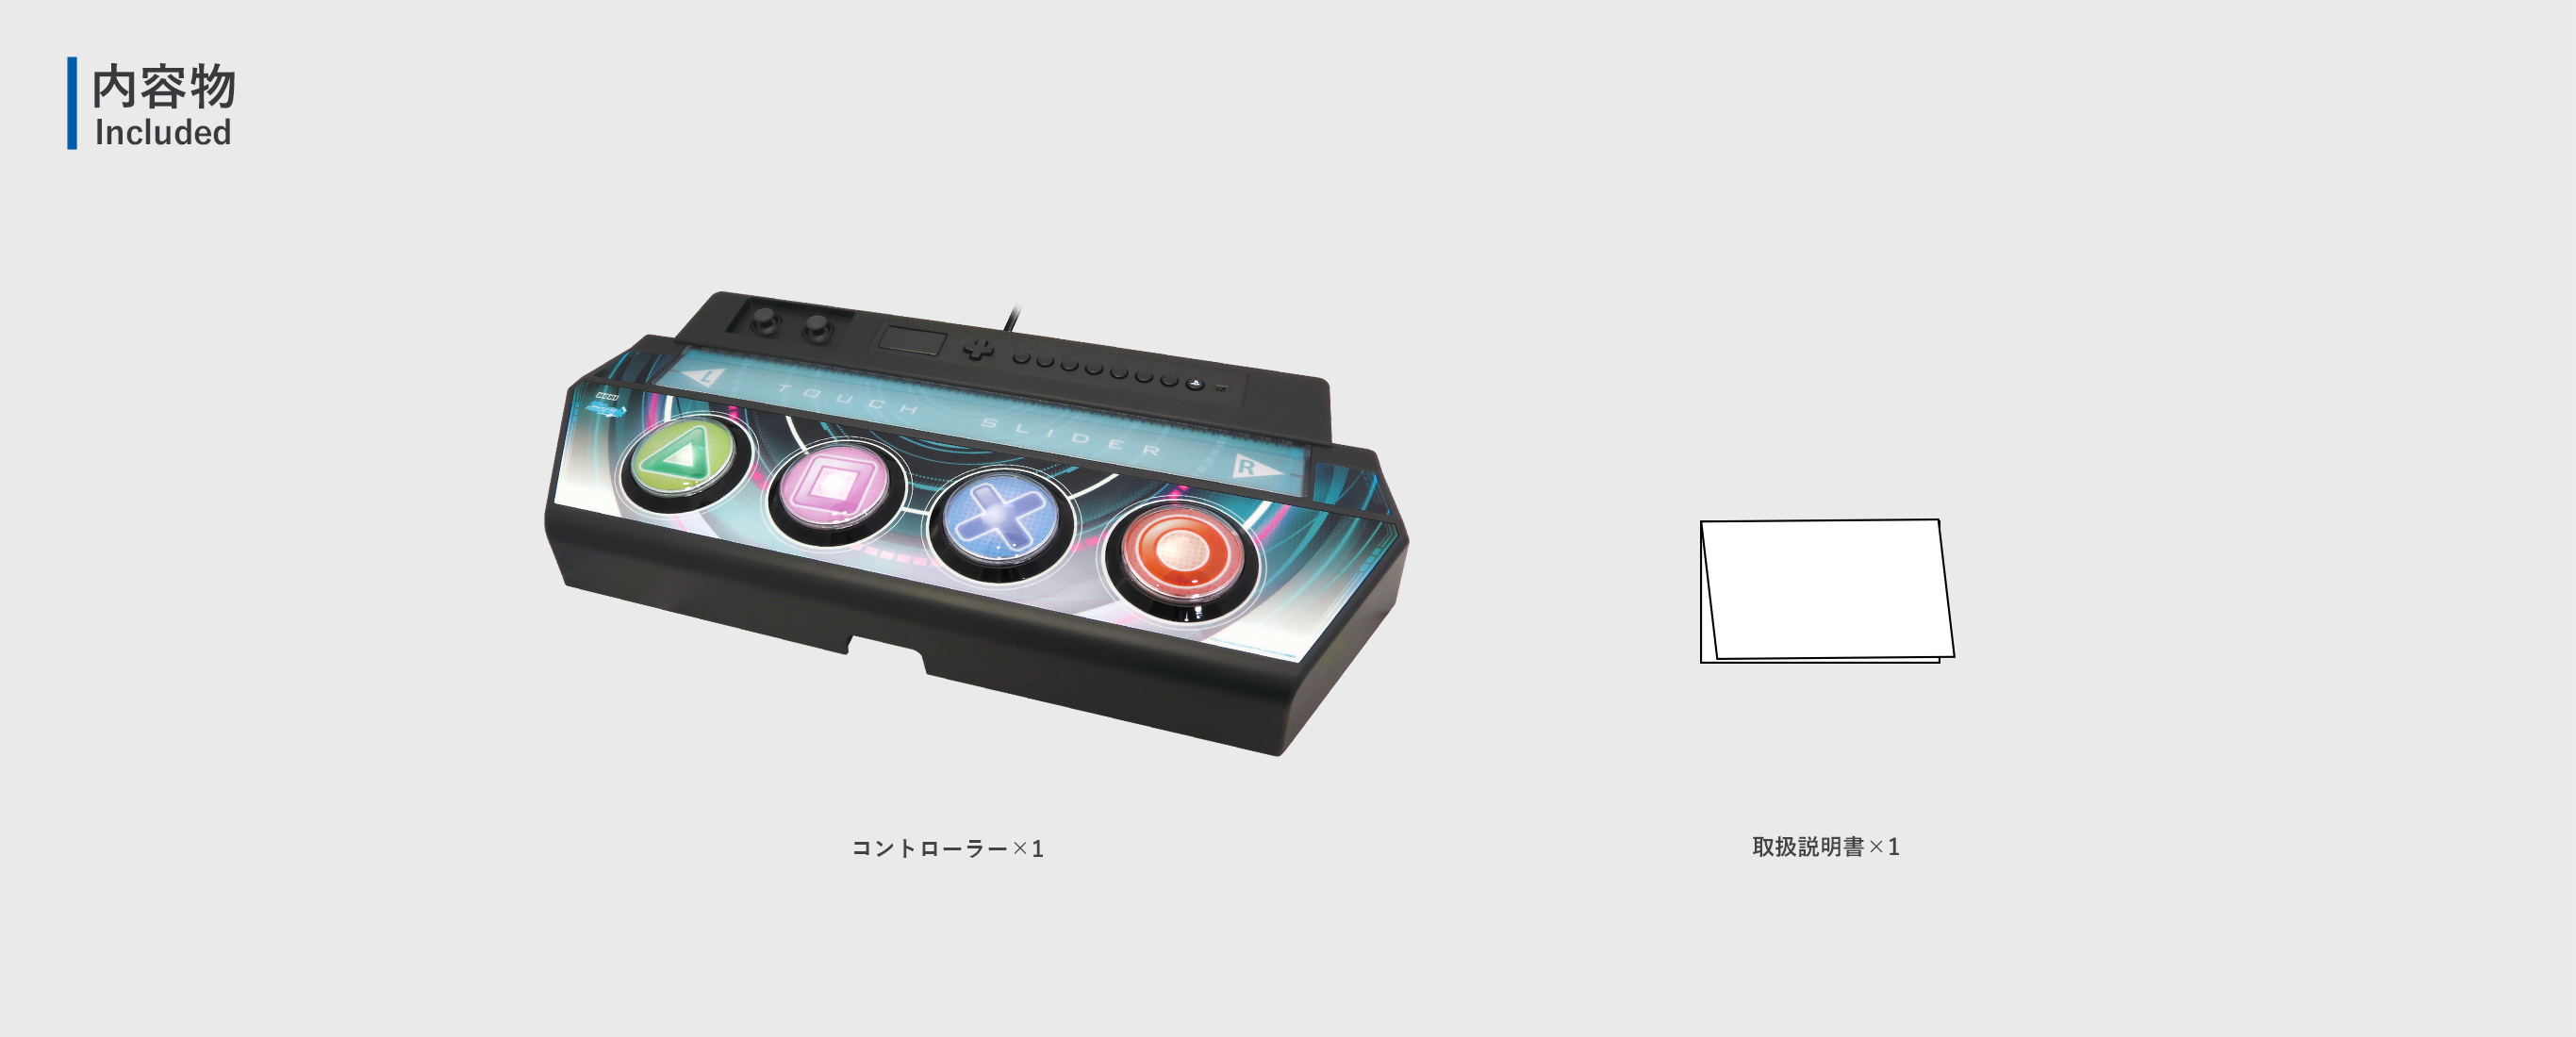 株式会社 HORI | 『初音ミク Project DIVA Future Tone DX』 専用コントローラー for PlayStation®4